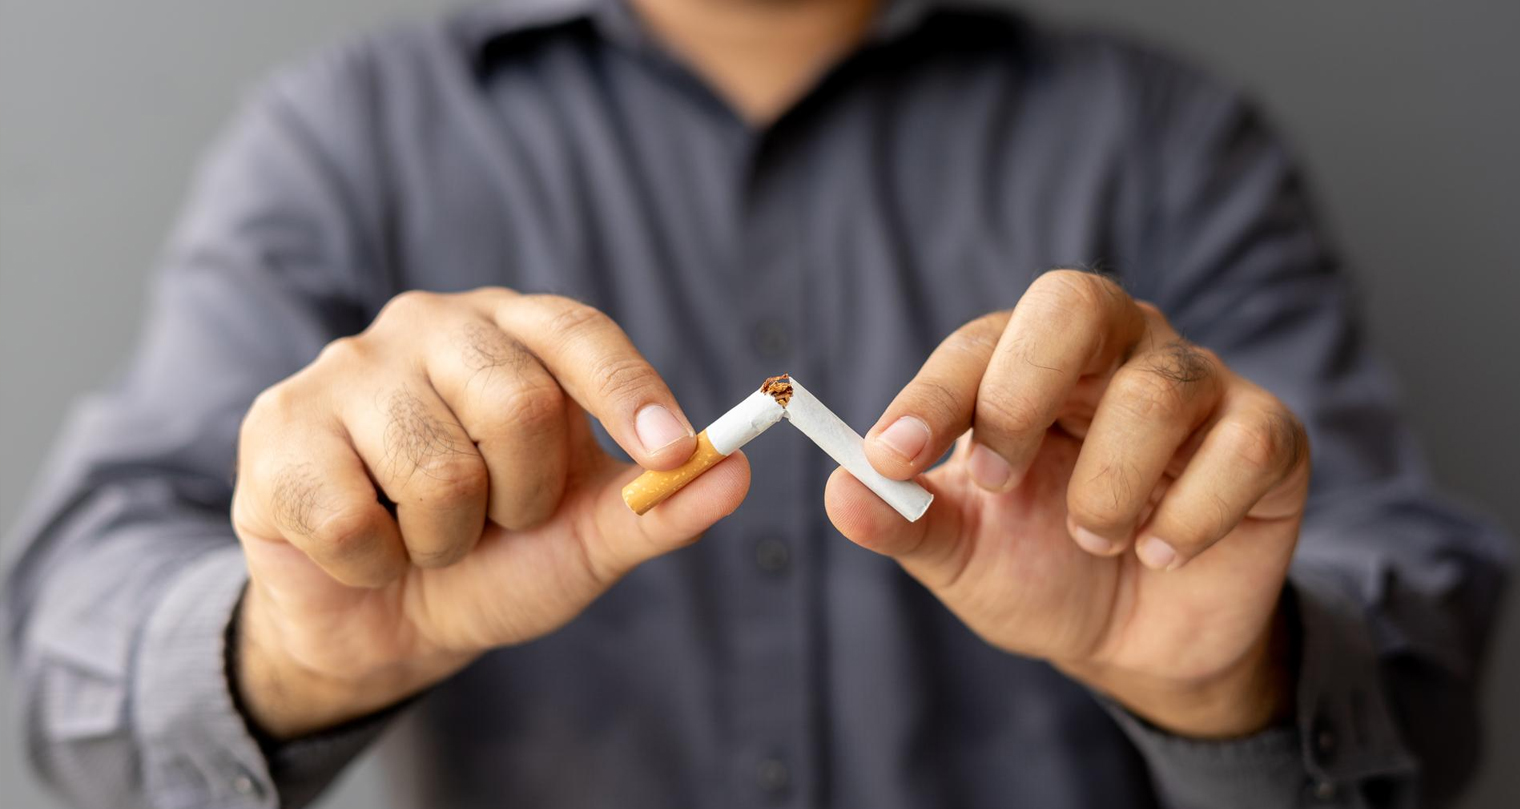 Hanya dalam Hitungan Menit, Tubuh Akan Mulai Merespon Saat Berhenti Merokok